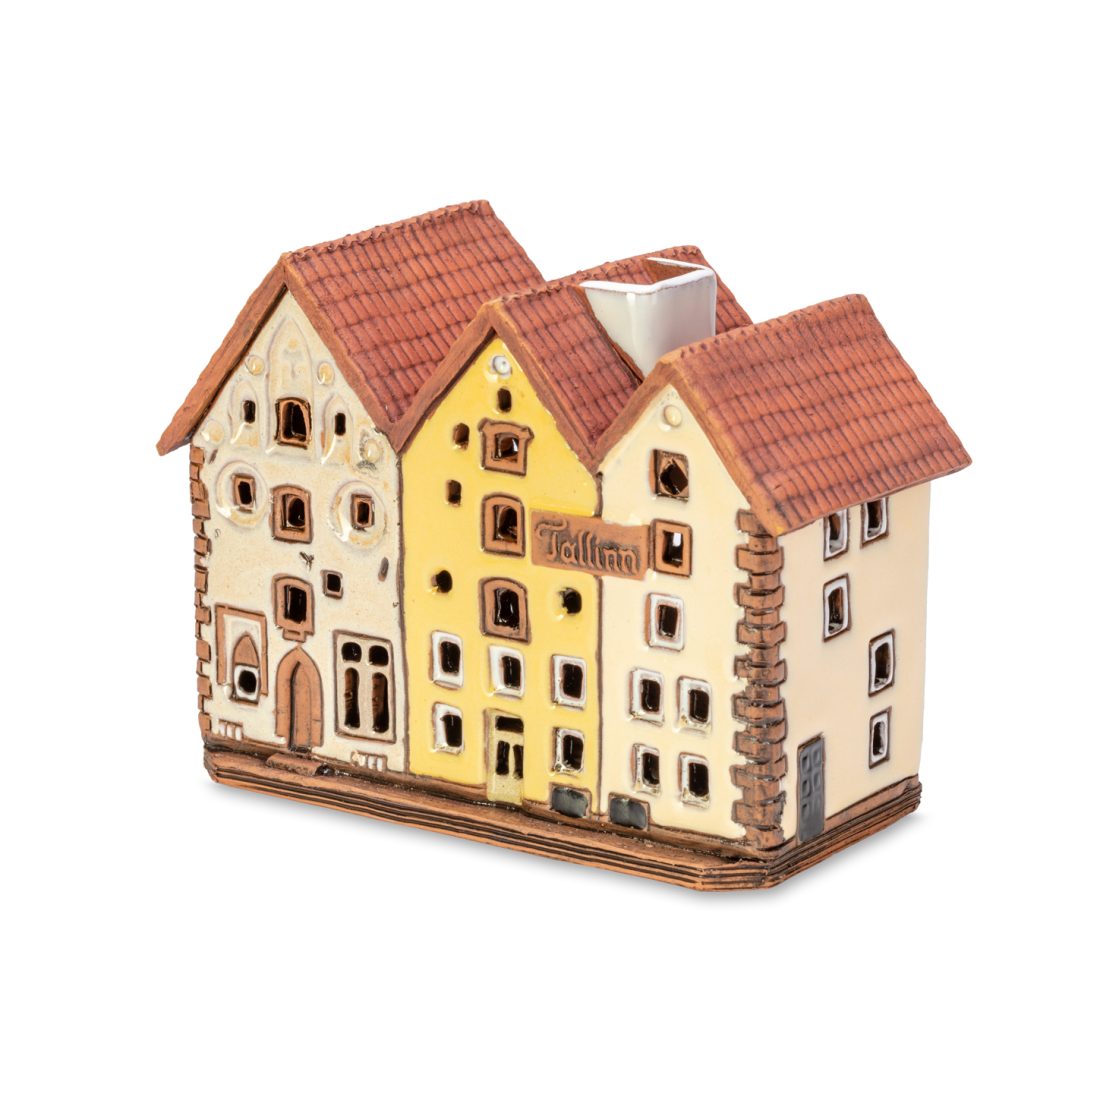 Handgemachte keramische Miniatur, originalgetreue Kopie eines Gebäudes in Tallinn TALL 06 mini